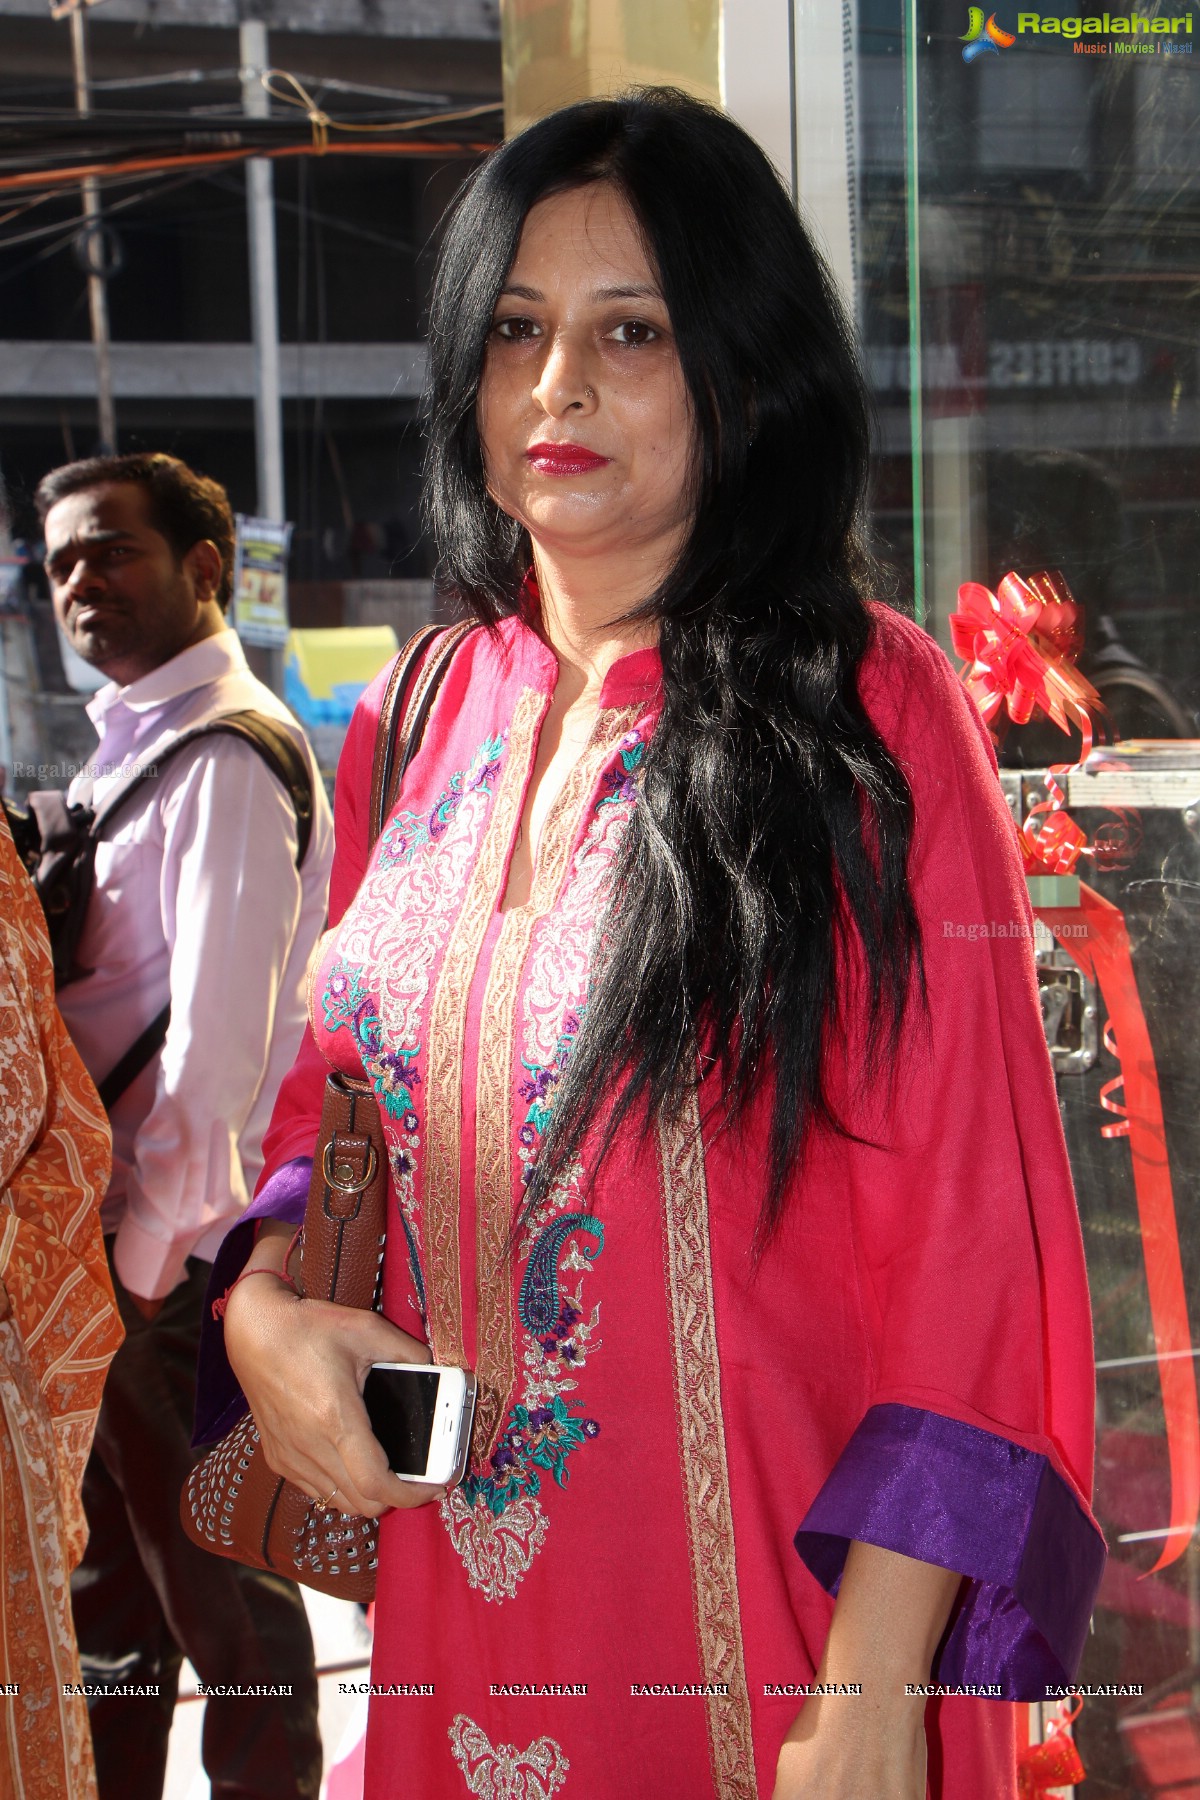 Neeru's Grand Launch by Karisma Kapoor at Karkhana, Secunderabad